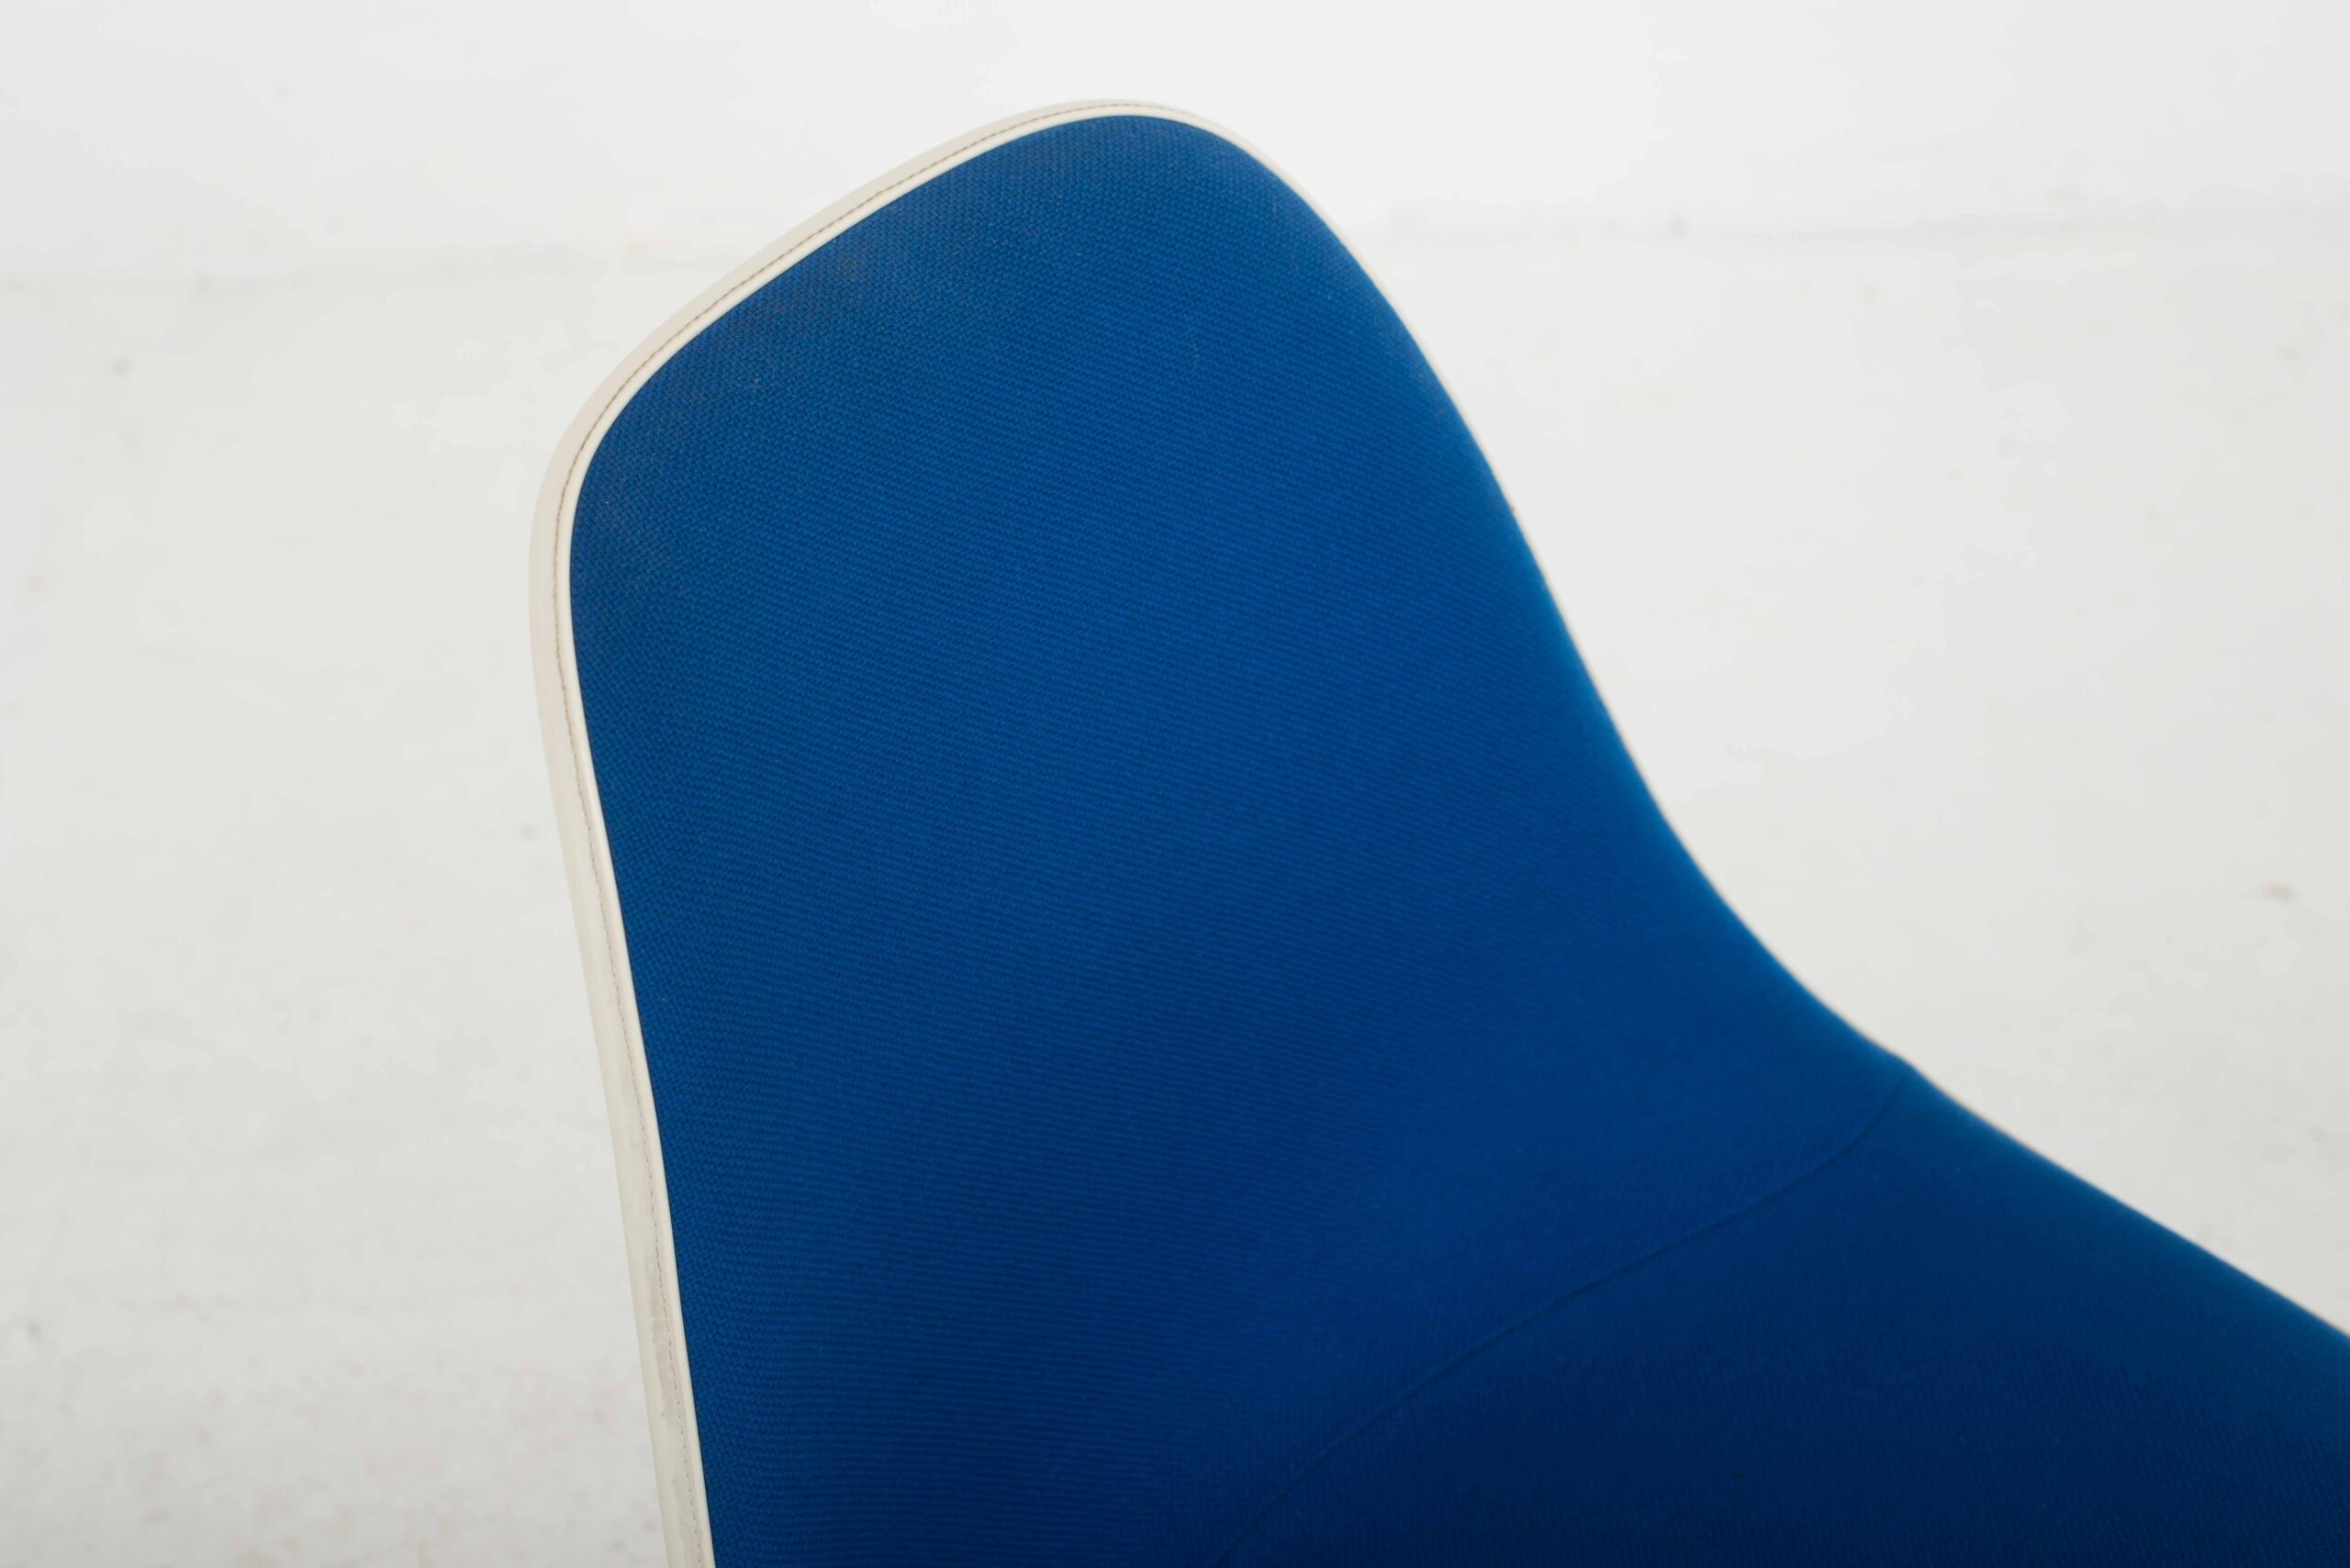 Eames Fiberglas Side Chairs von Vitra / Hermann Miller, im Viererset-6